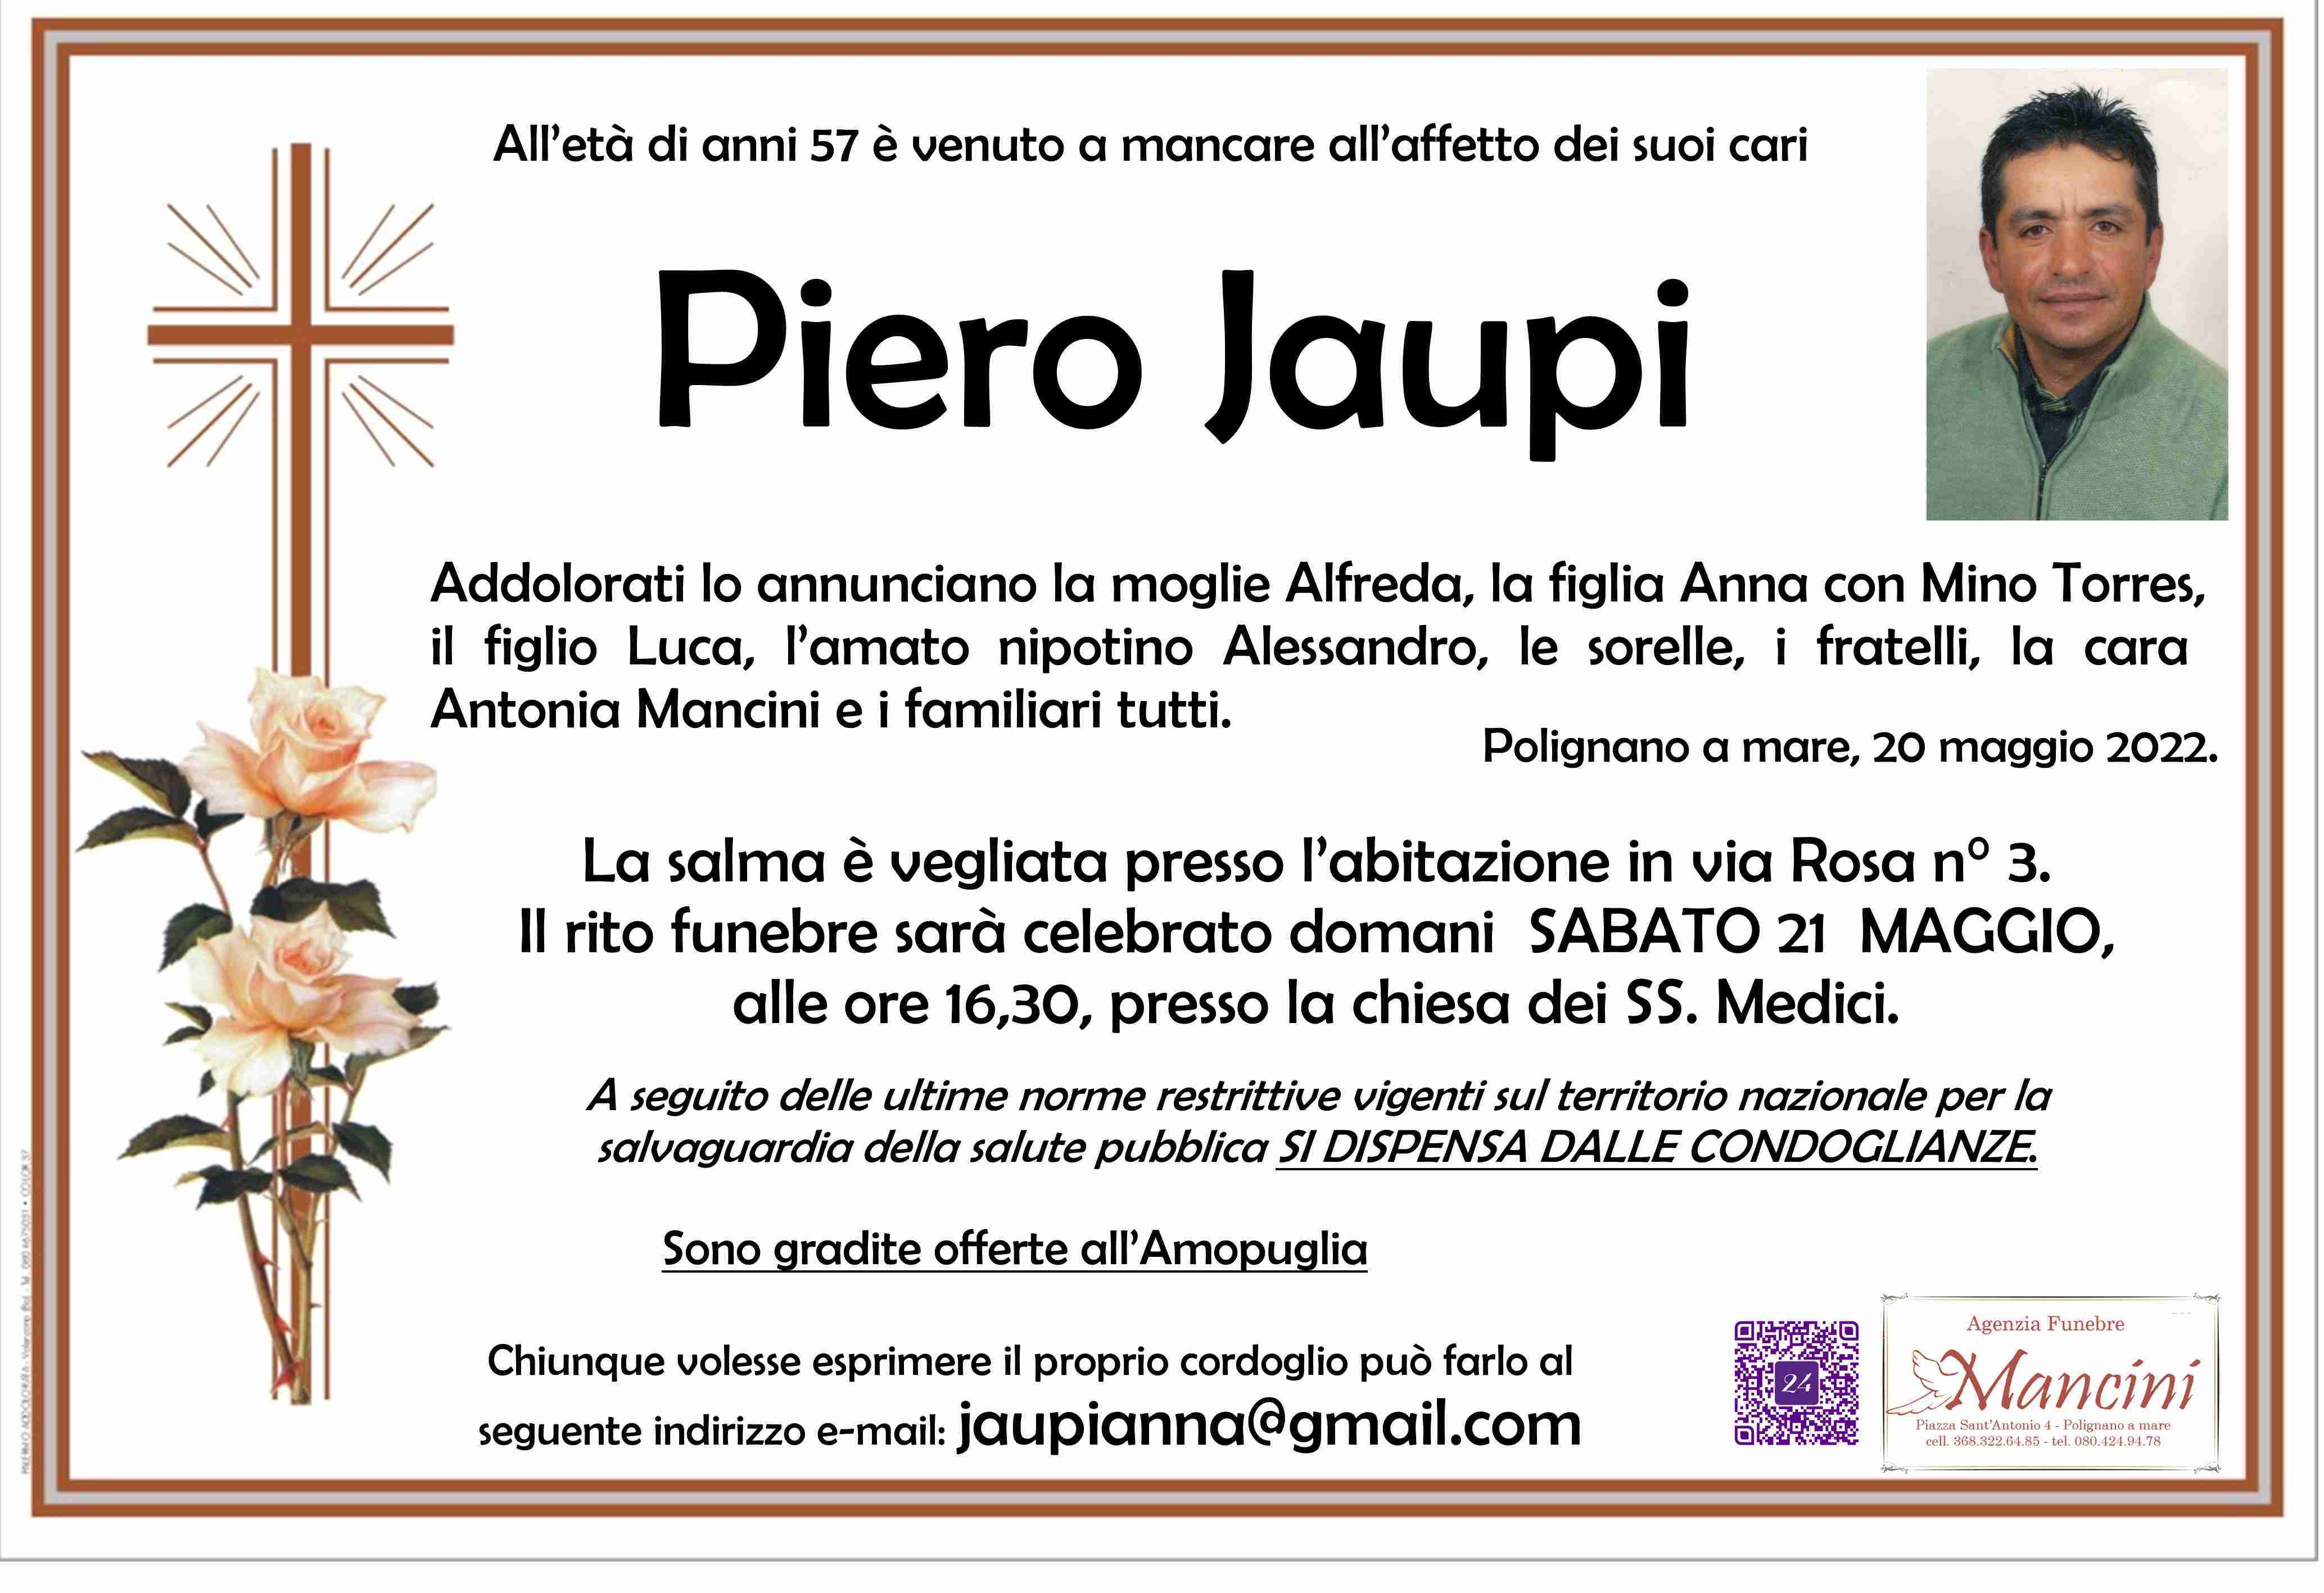 Piero Jaupi